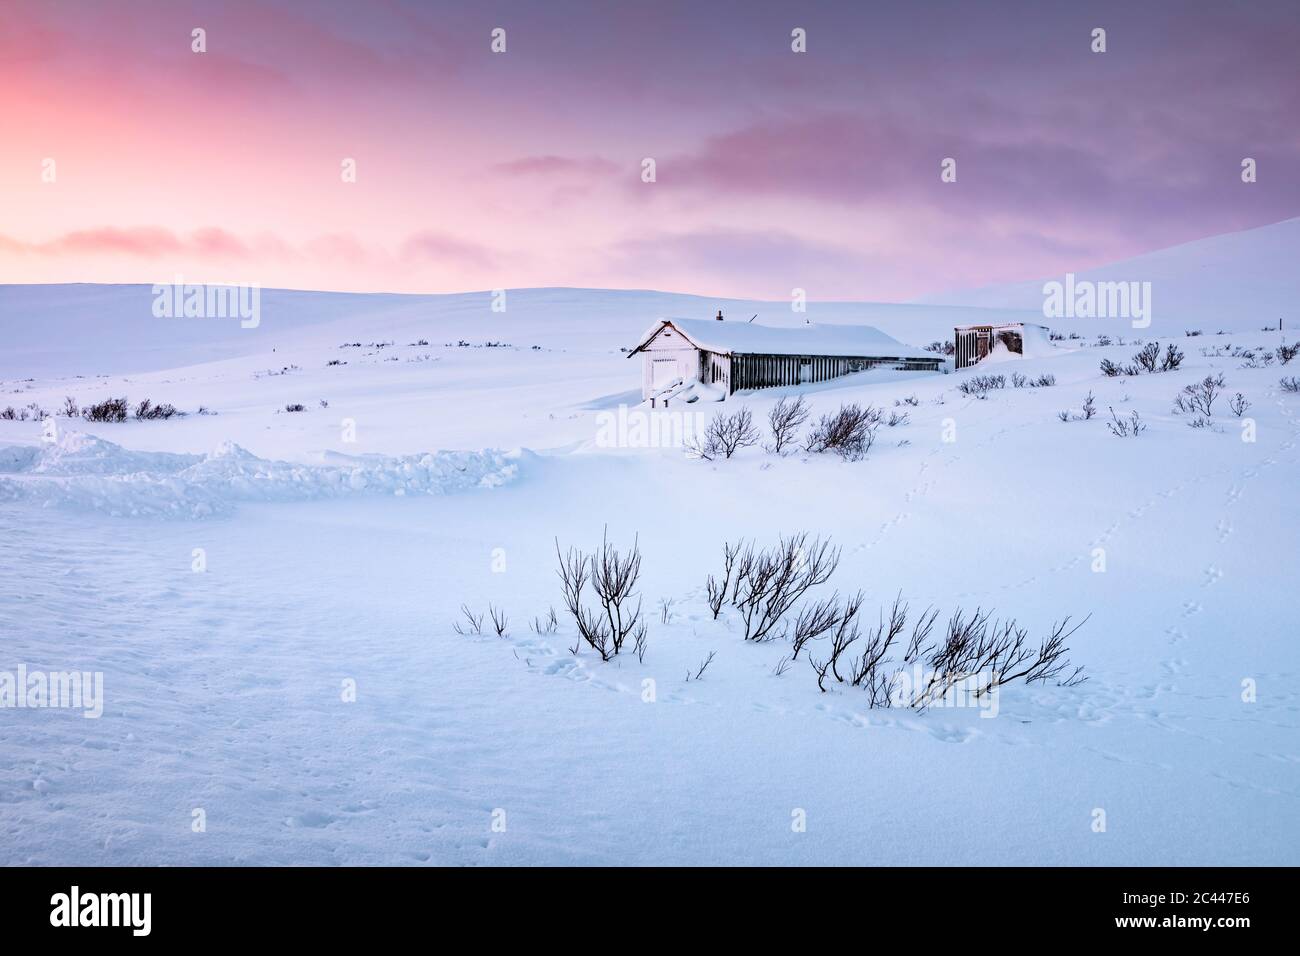 Maison de vacances isolée dans le paysage d'hiver, Tana, Norvège Banque D'Images